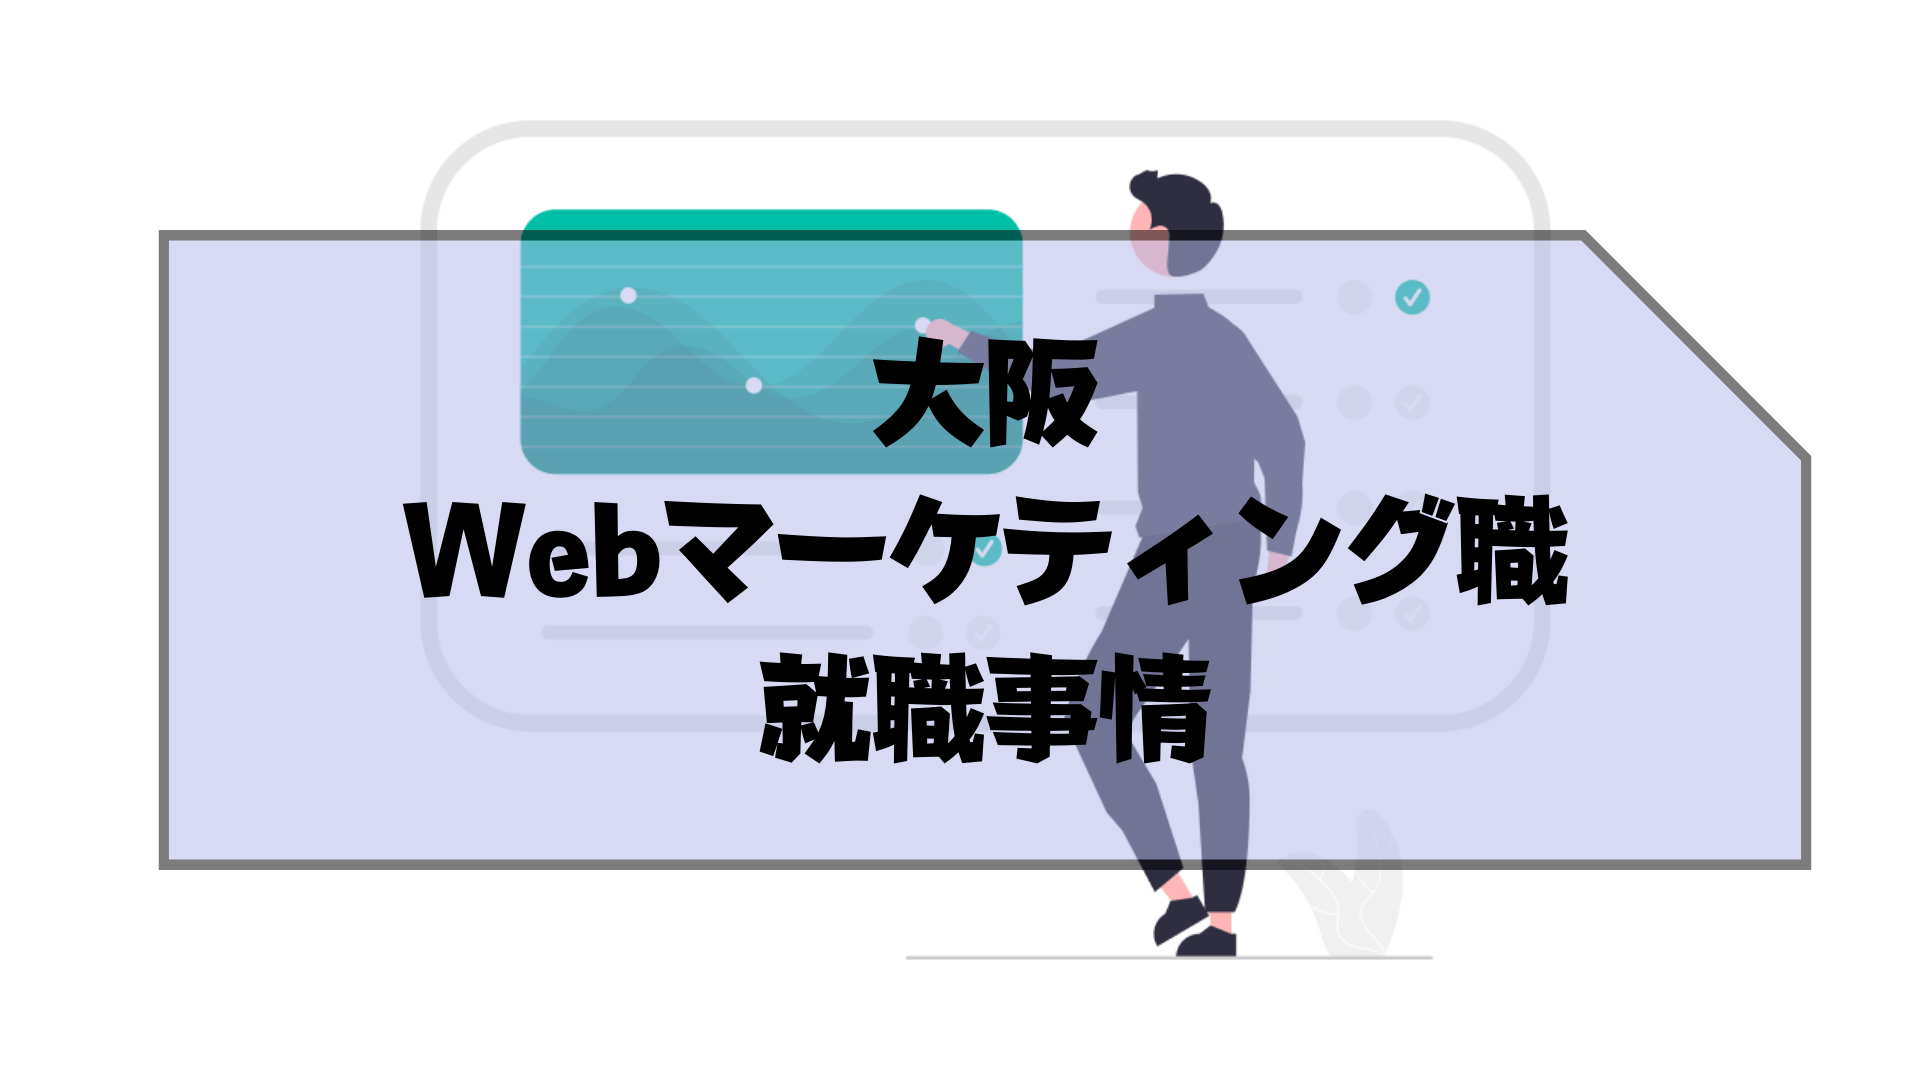 大阪_Webマーケティングスクール_大阪でのWebマーケティング職の就職事情